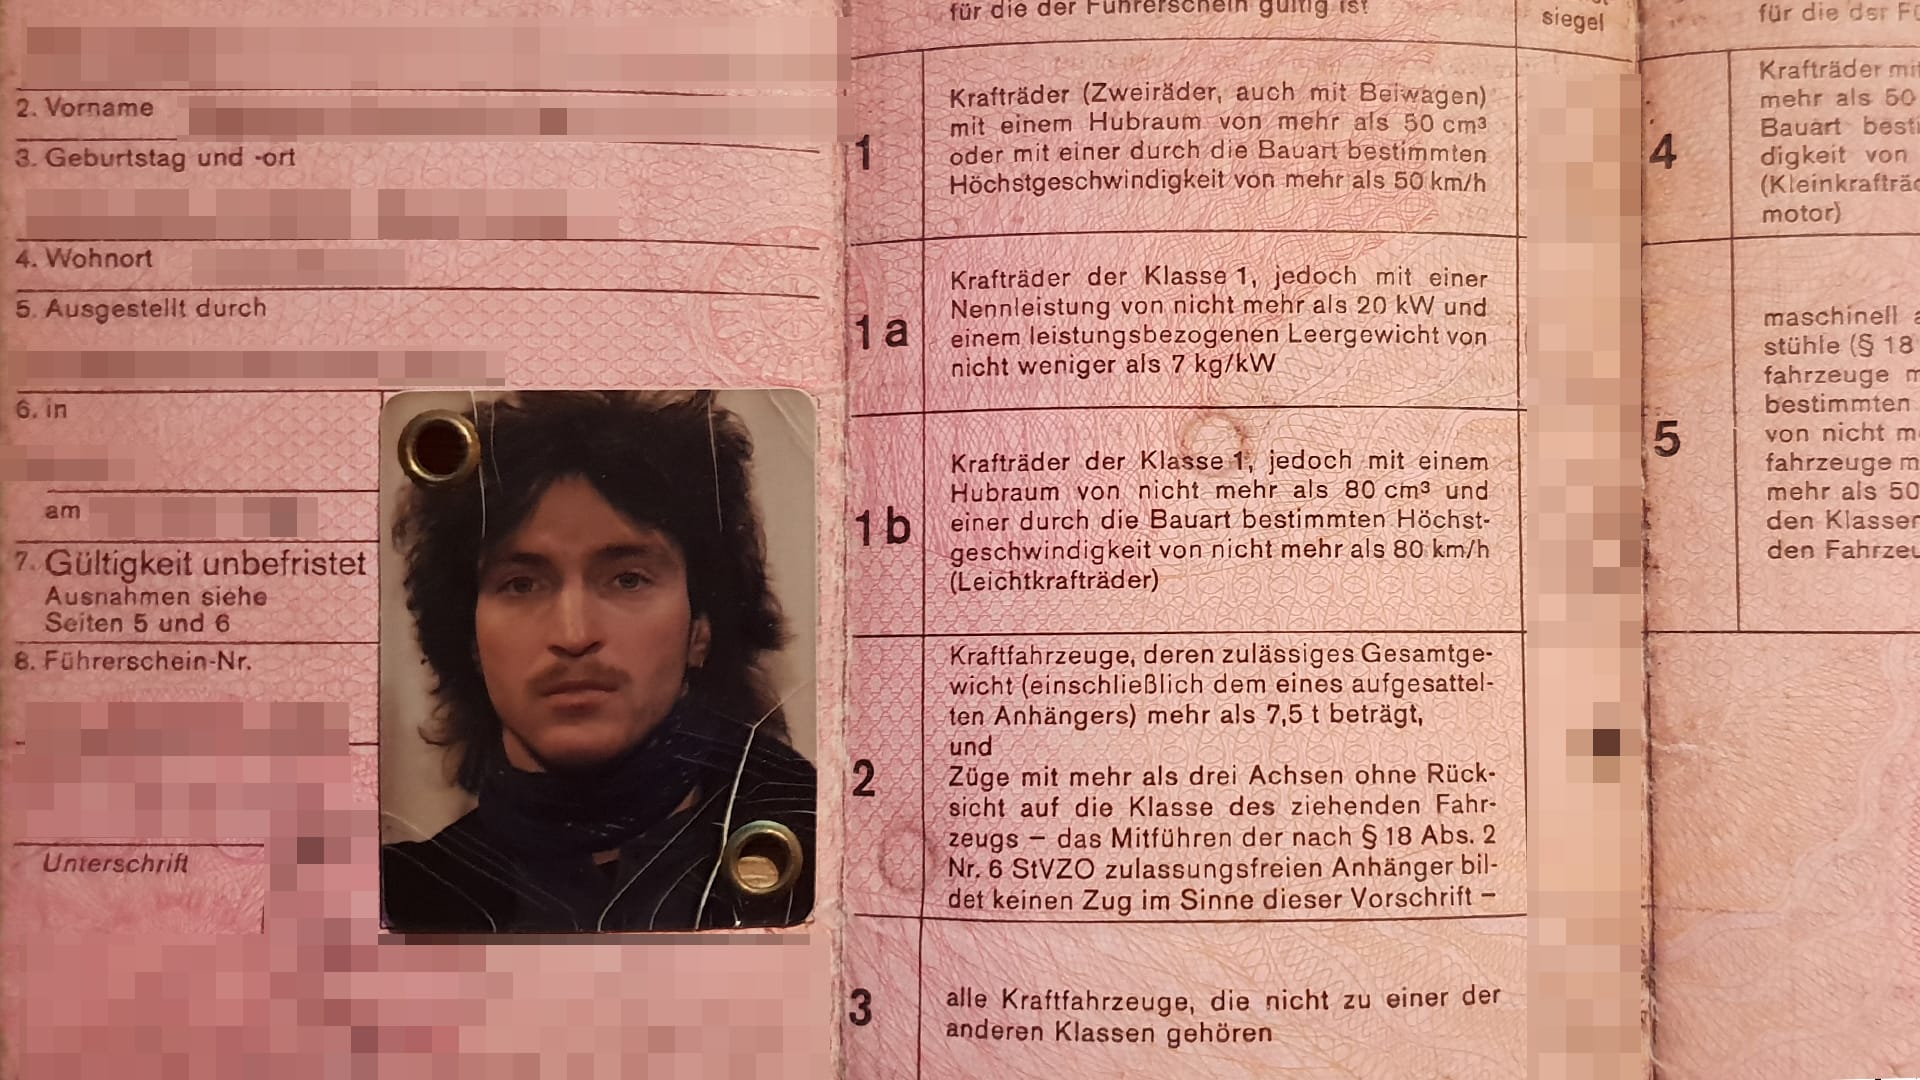 Unser Leser Achim H. verlor seinen grauen Führerschein bei einem Besuch im damaligen Ost-Berlin. Deshalb hat er heute den rosafarbenen Lappen.